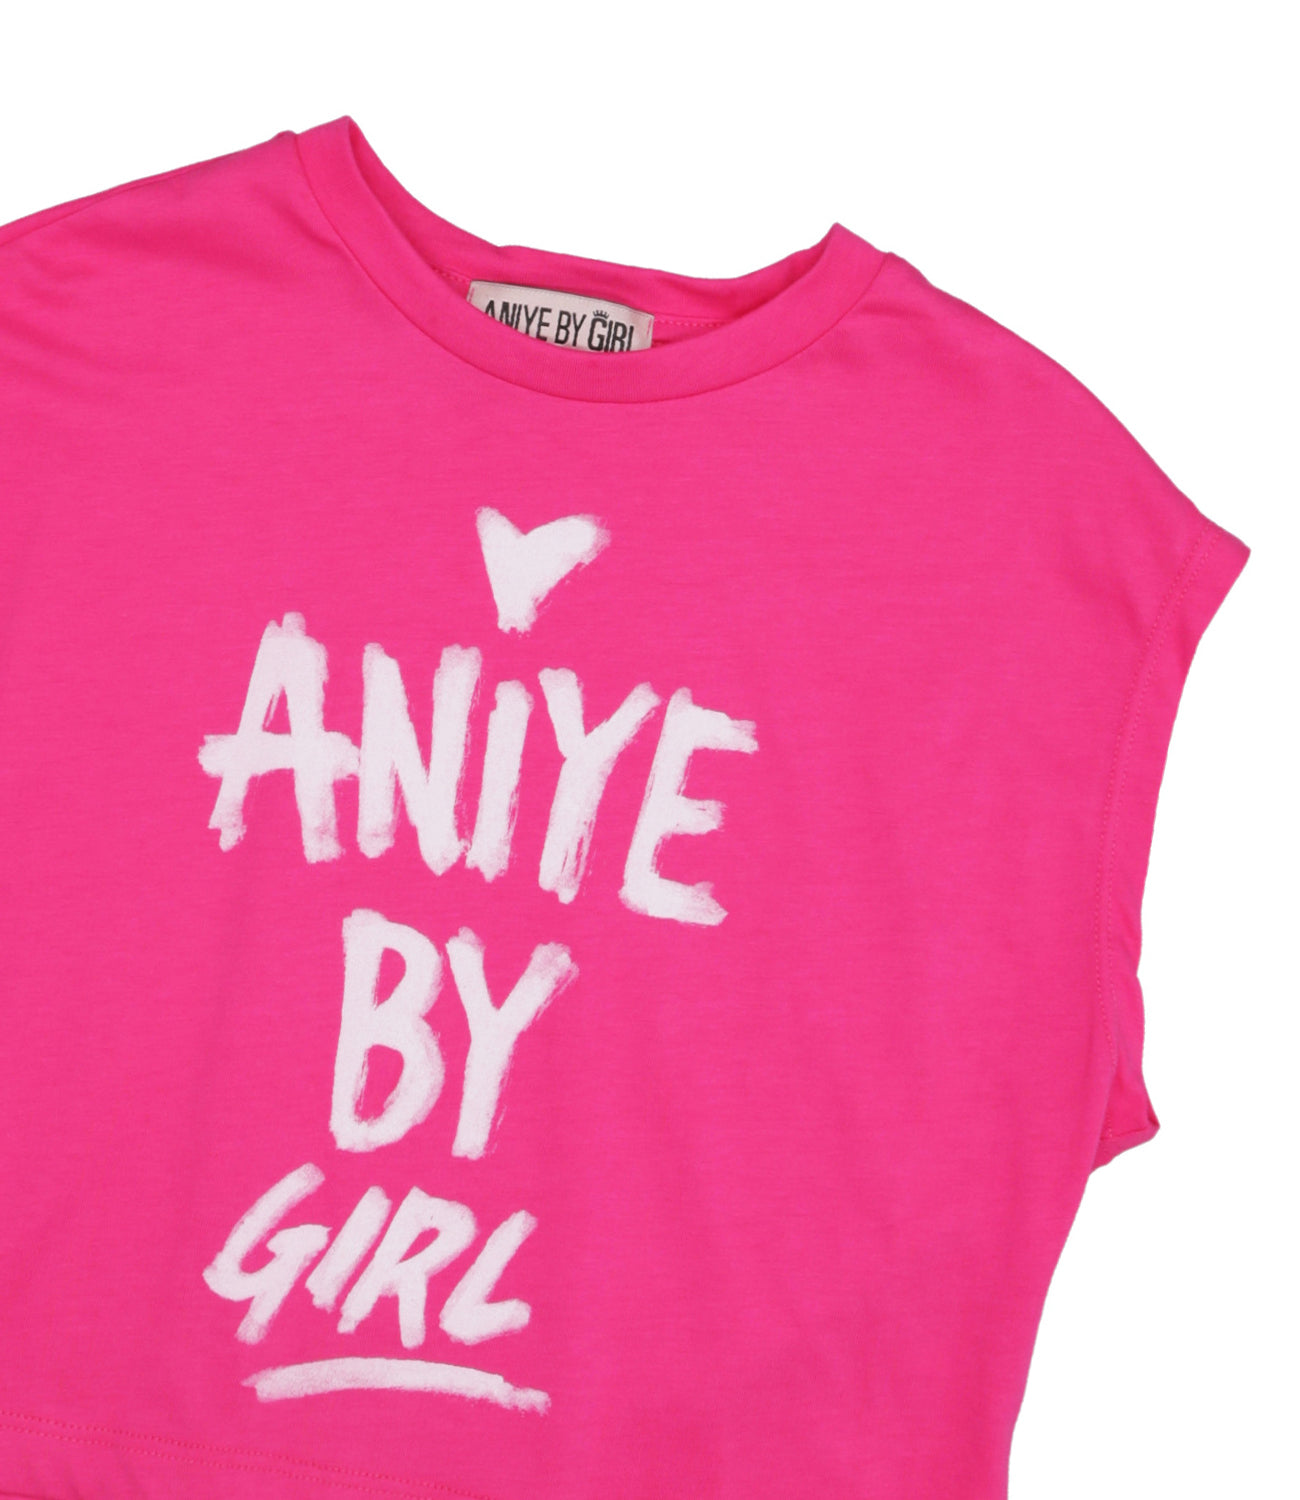 Aniye By Girl | T-Shirt Fuxia